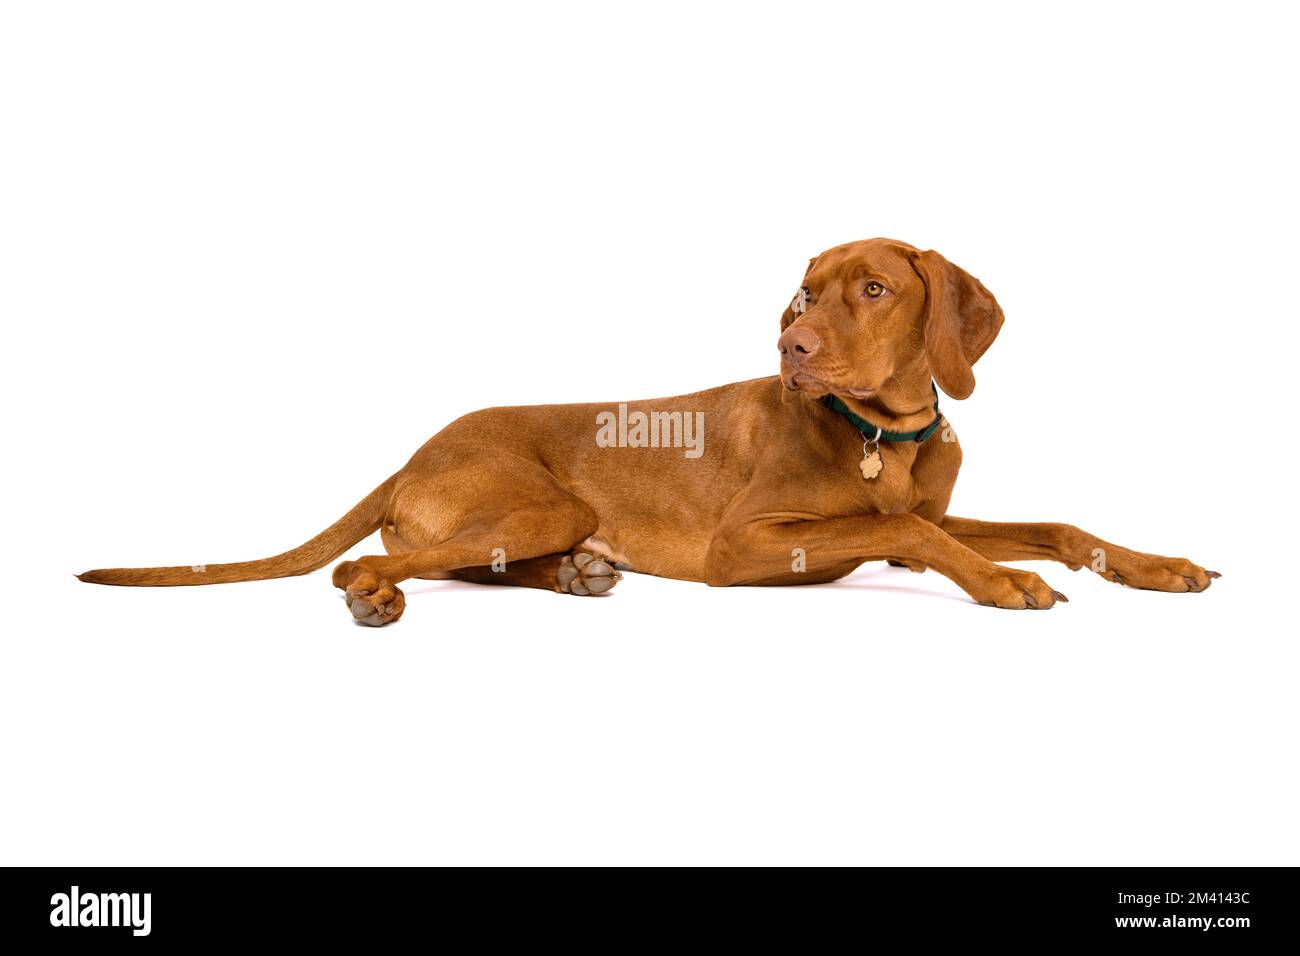 Wunderschönes studioporträt mit ungarischer Vizsla. Hund mit Tierkragen, dessen Namensschild von der Kamera abgewandt ist, isoliert auf weißem Hintergrund. Stockfoto